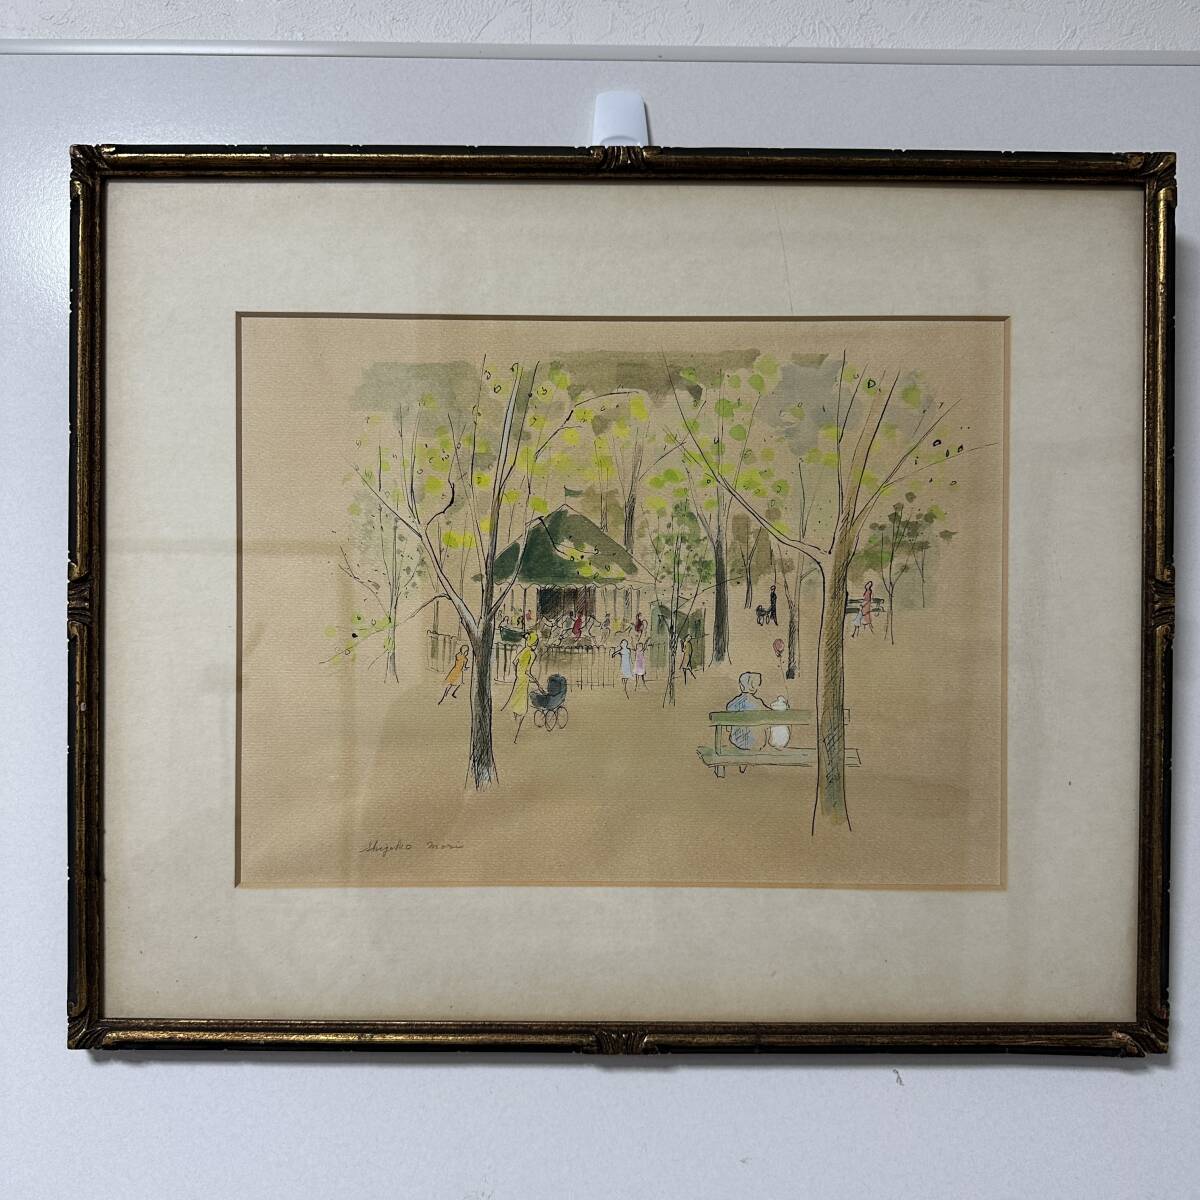 [Authentique] Shigeko Mori Peinture de paysage Aquarelle Taille 35 cm x 26 cm (RA-005), Peinture, aquarelle, Nature, Peinture de paysage